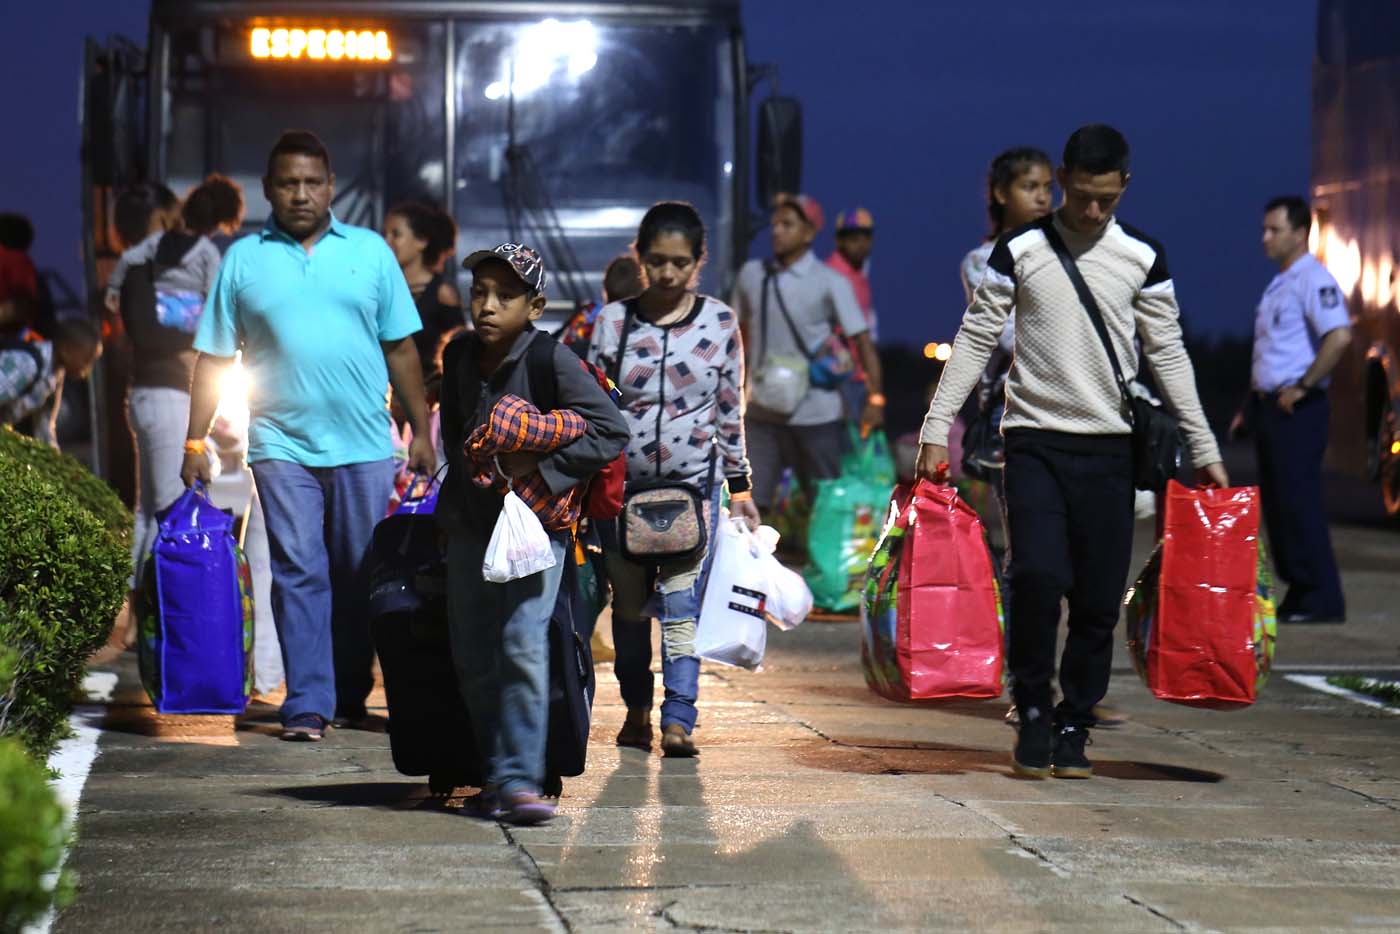 Una crisis migratoria en América del Sur: la salida de venezolanos pone a prueba la hospitalidad de países vecinos